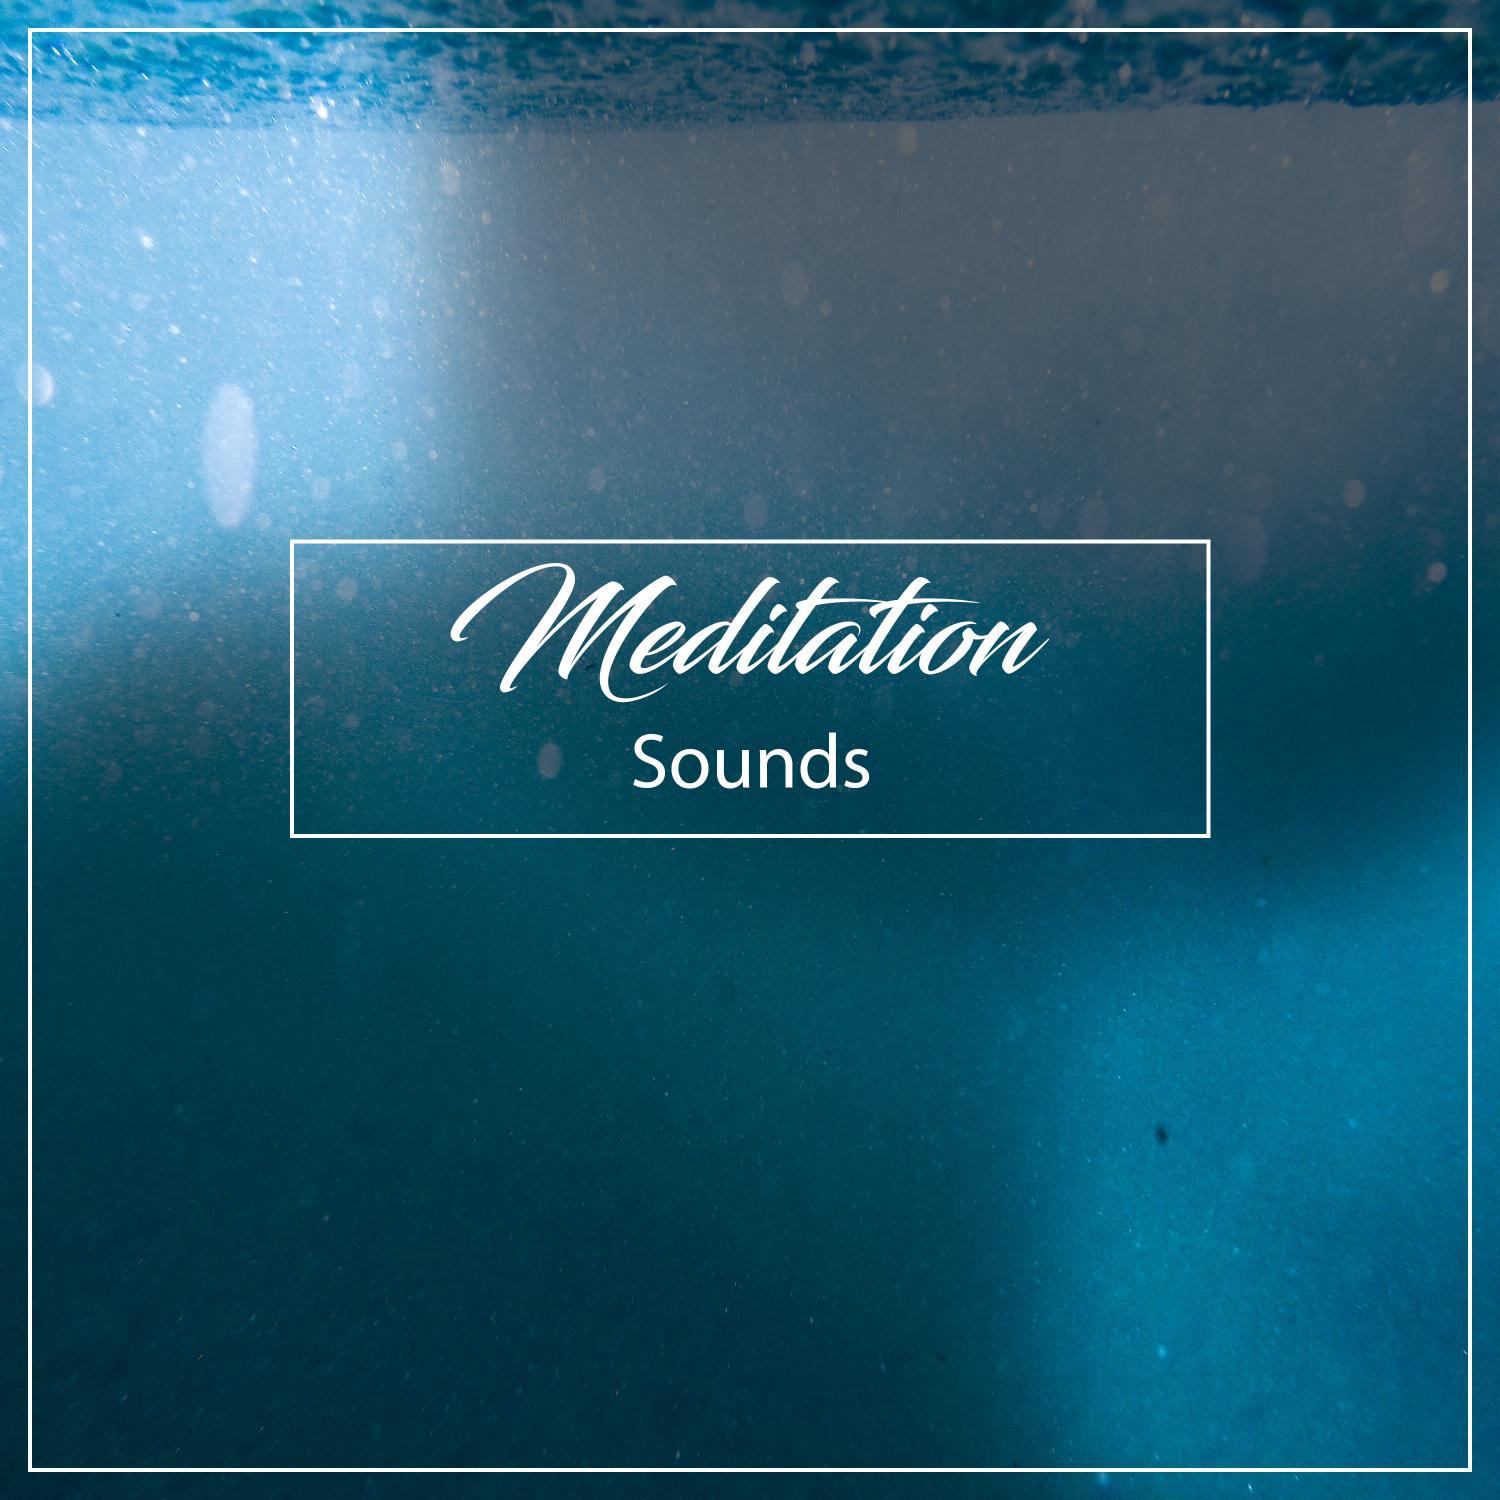 15 Meditation Sounds - Calming Nature Sounds